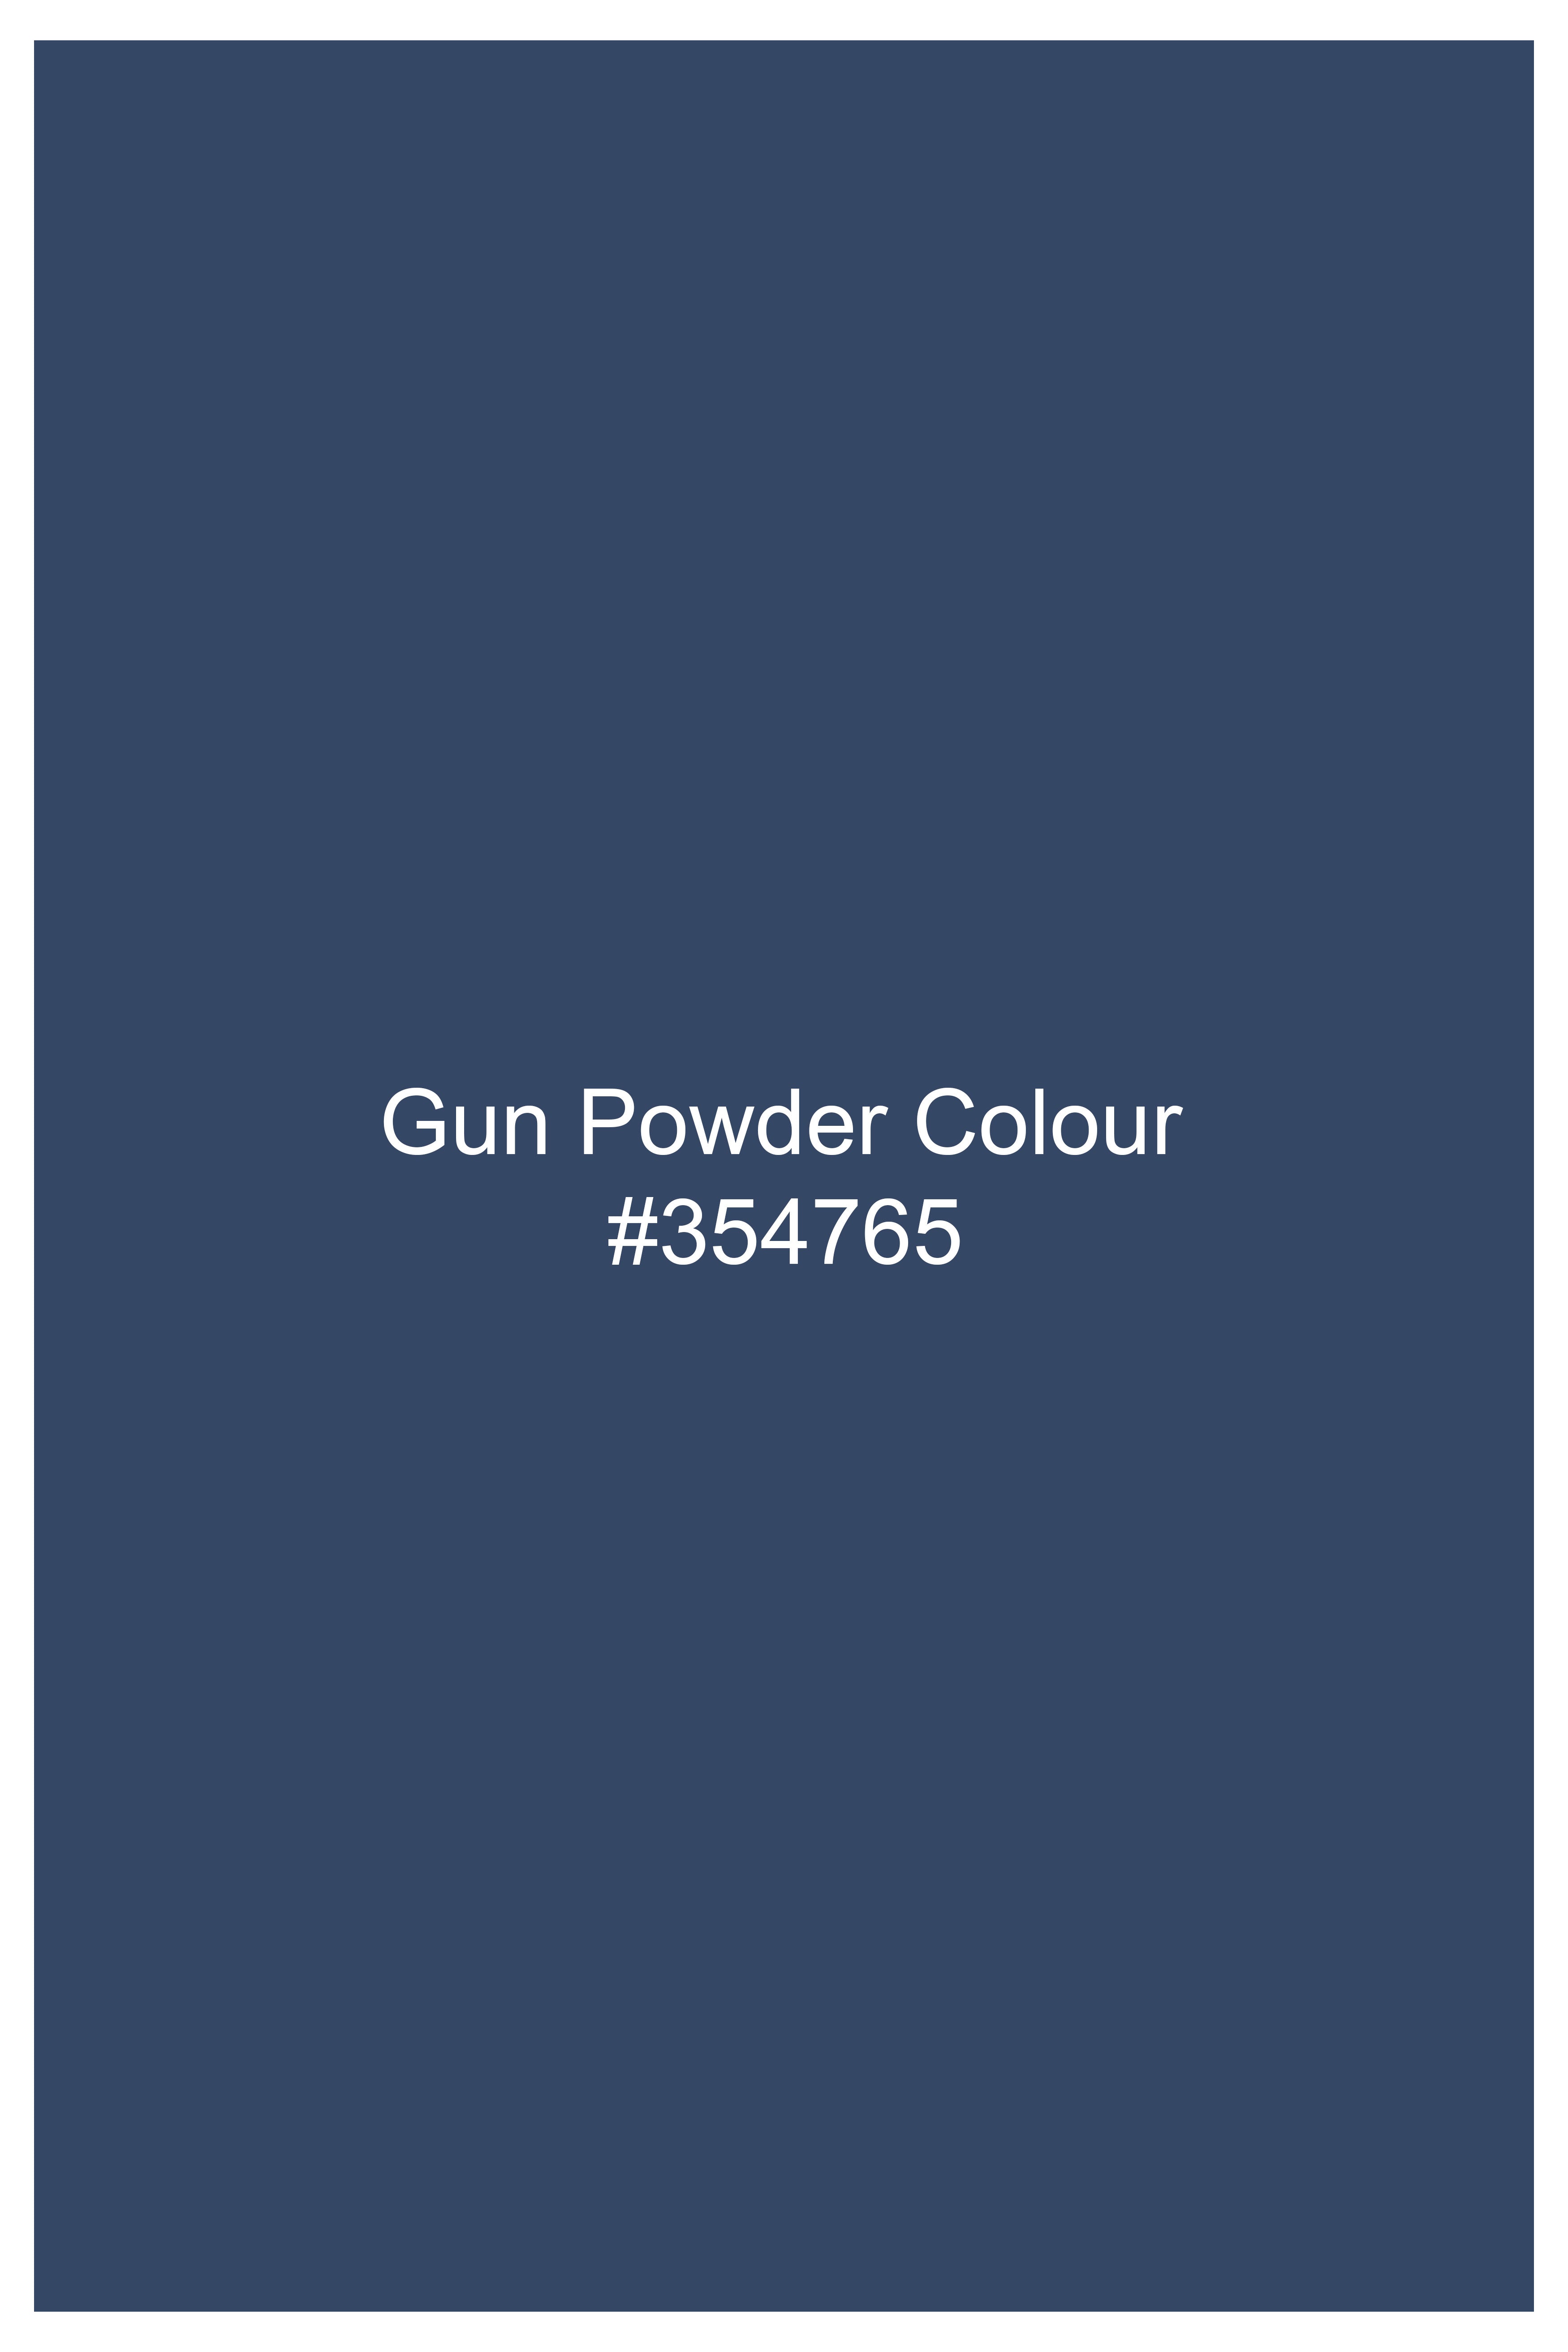 Gun Powder Blue Rinse Wash Denim J267-30, J267-32, J267-34, J267-36, J267-38, J267-40